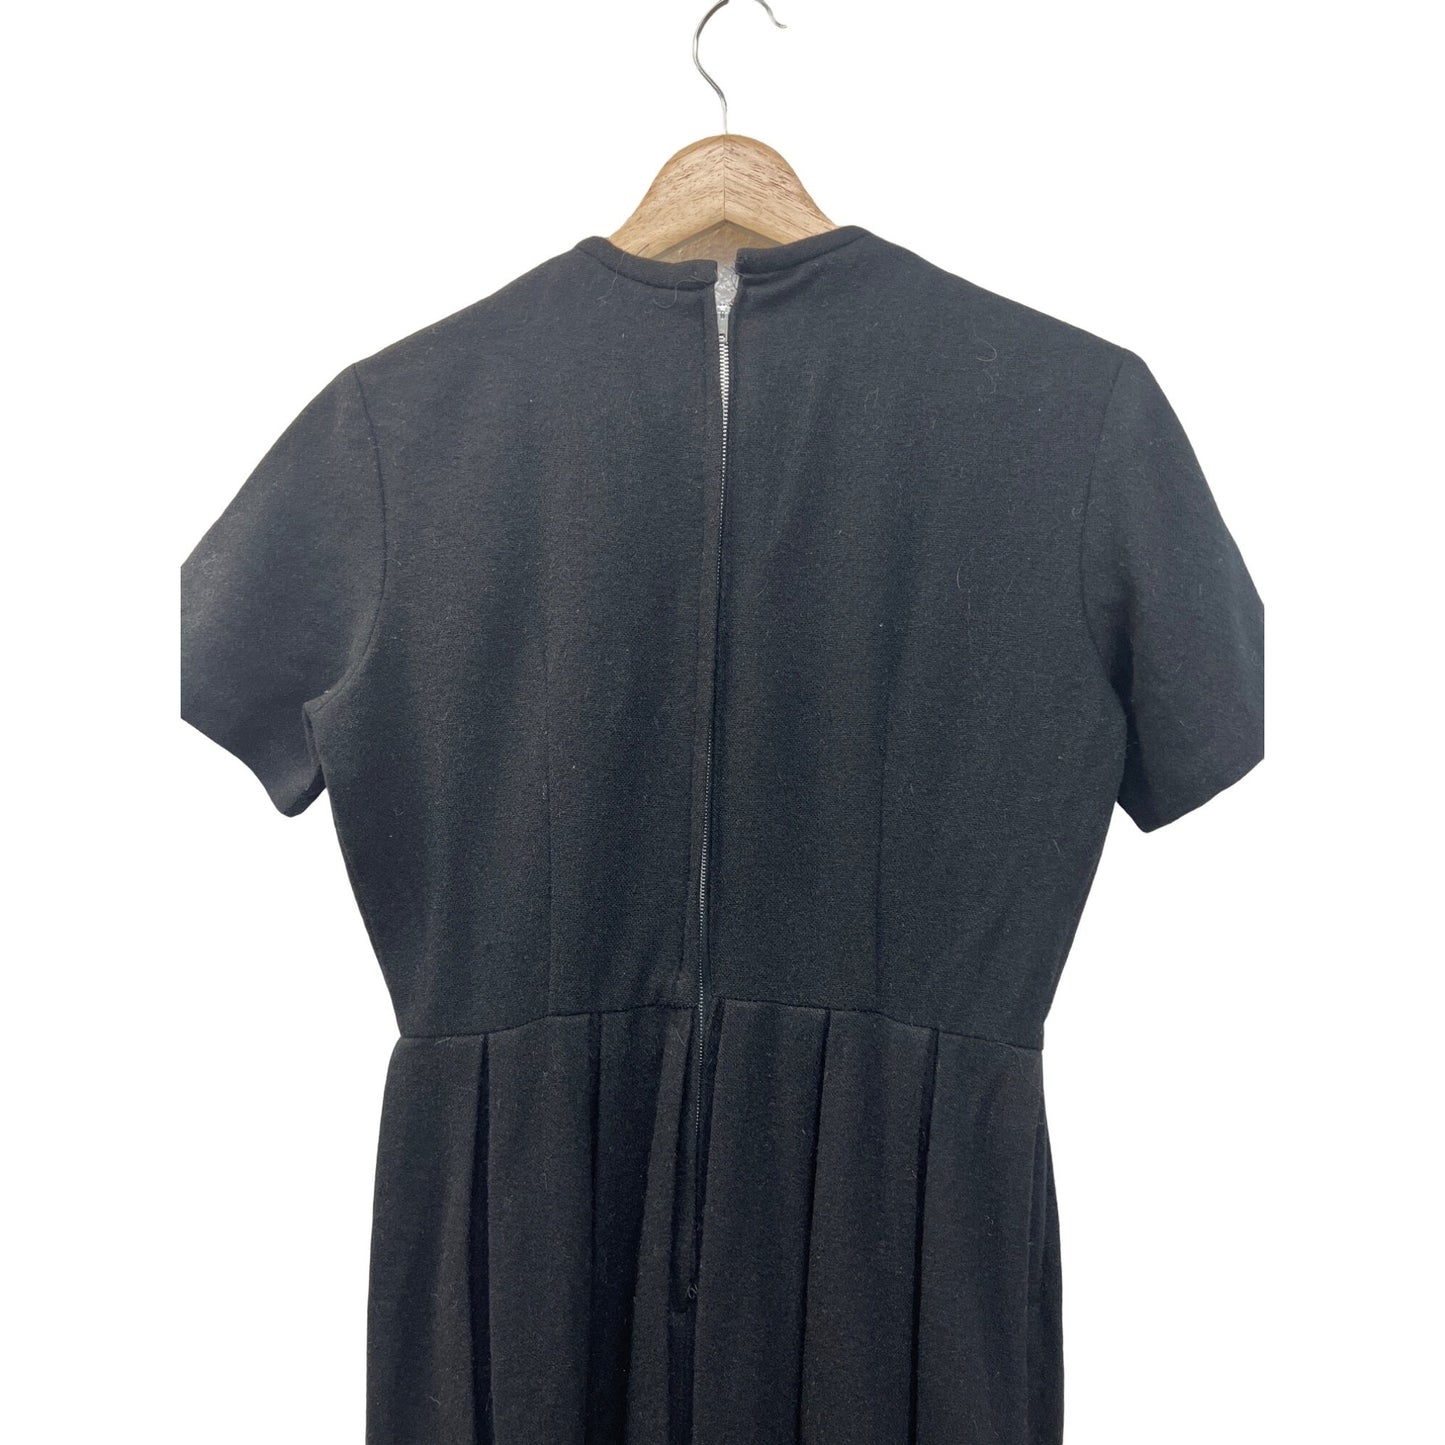 Vintage 50's Black Wool A Line Pleated Dress